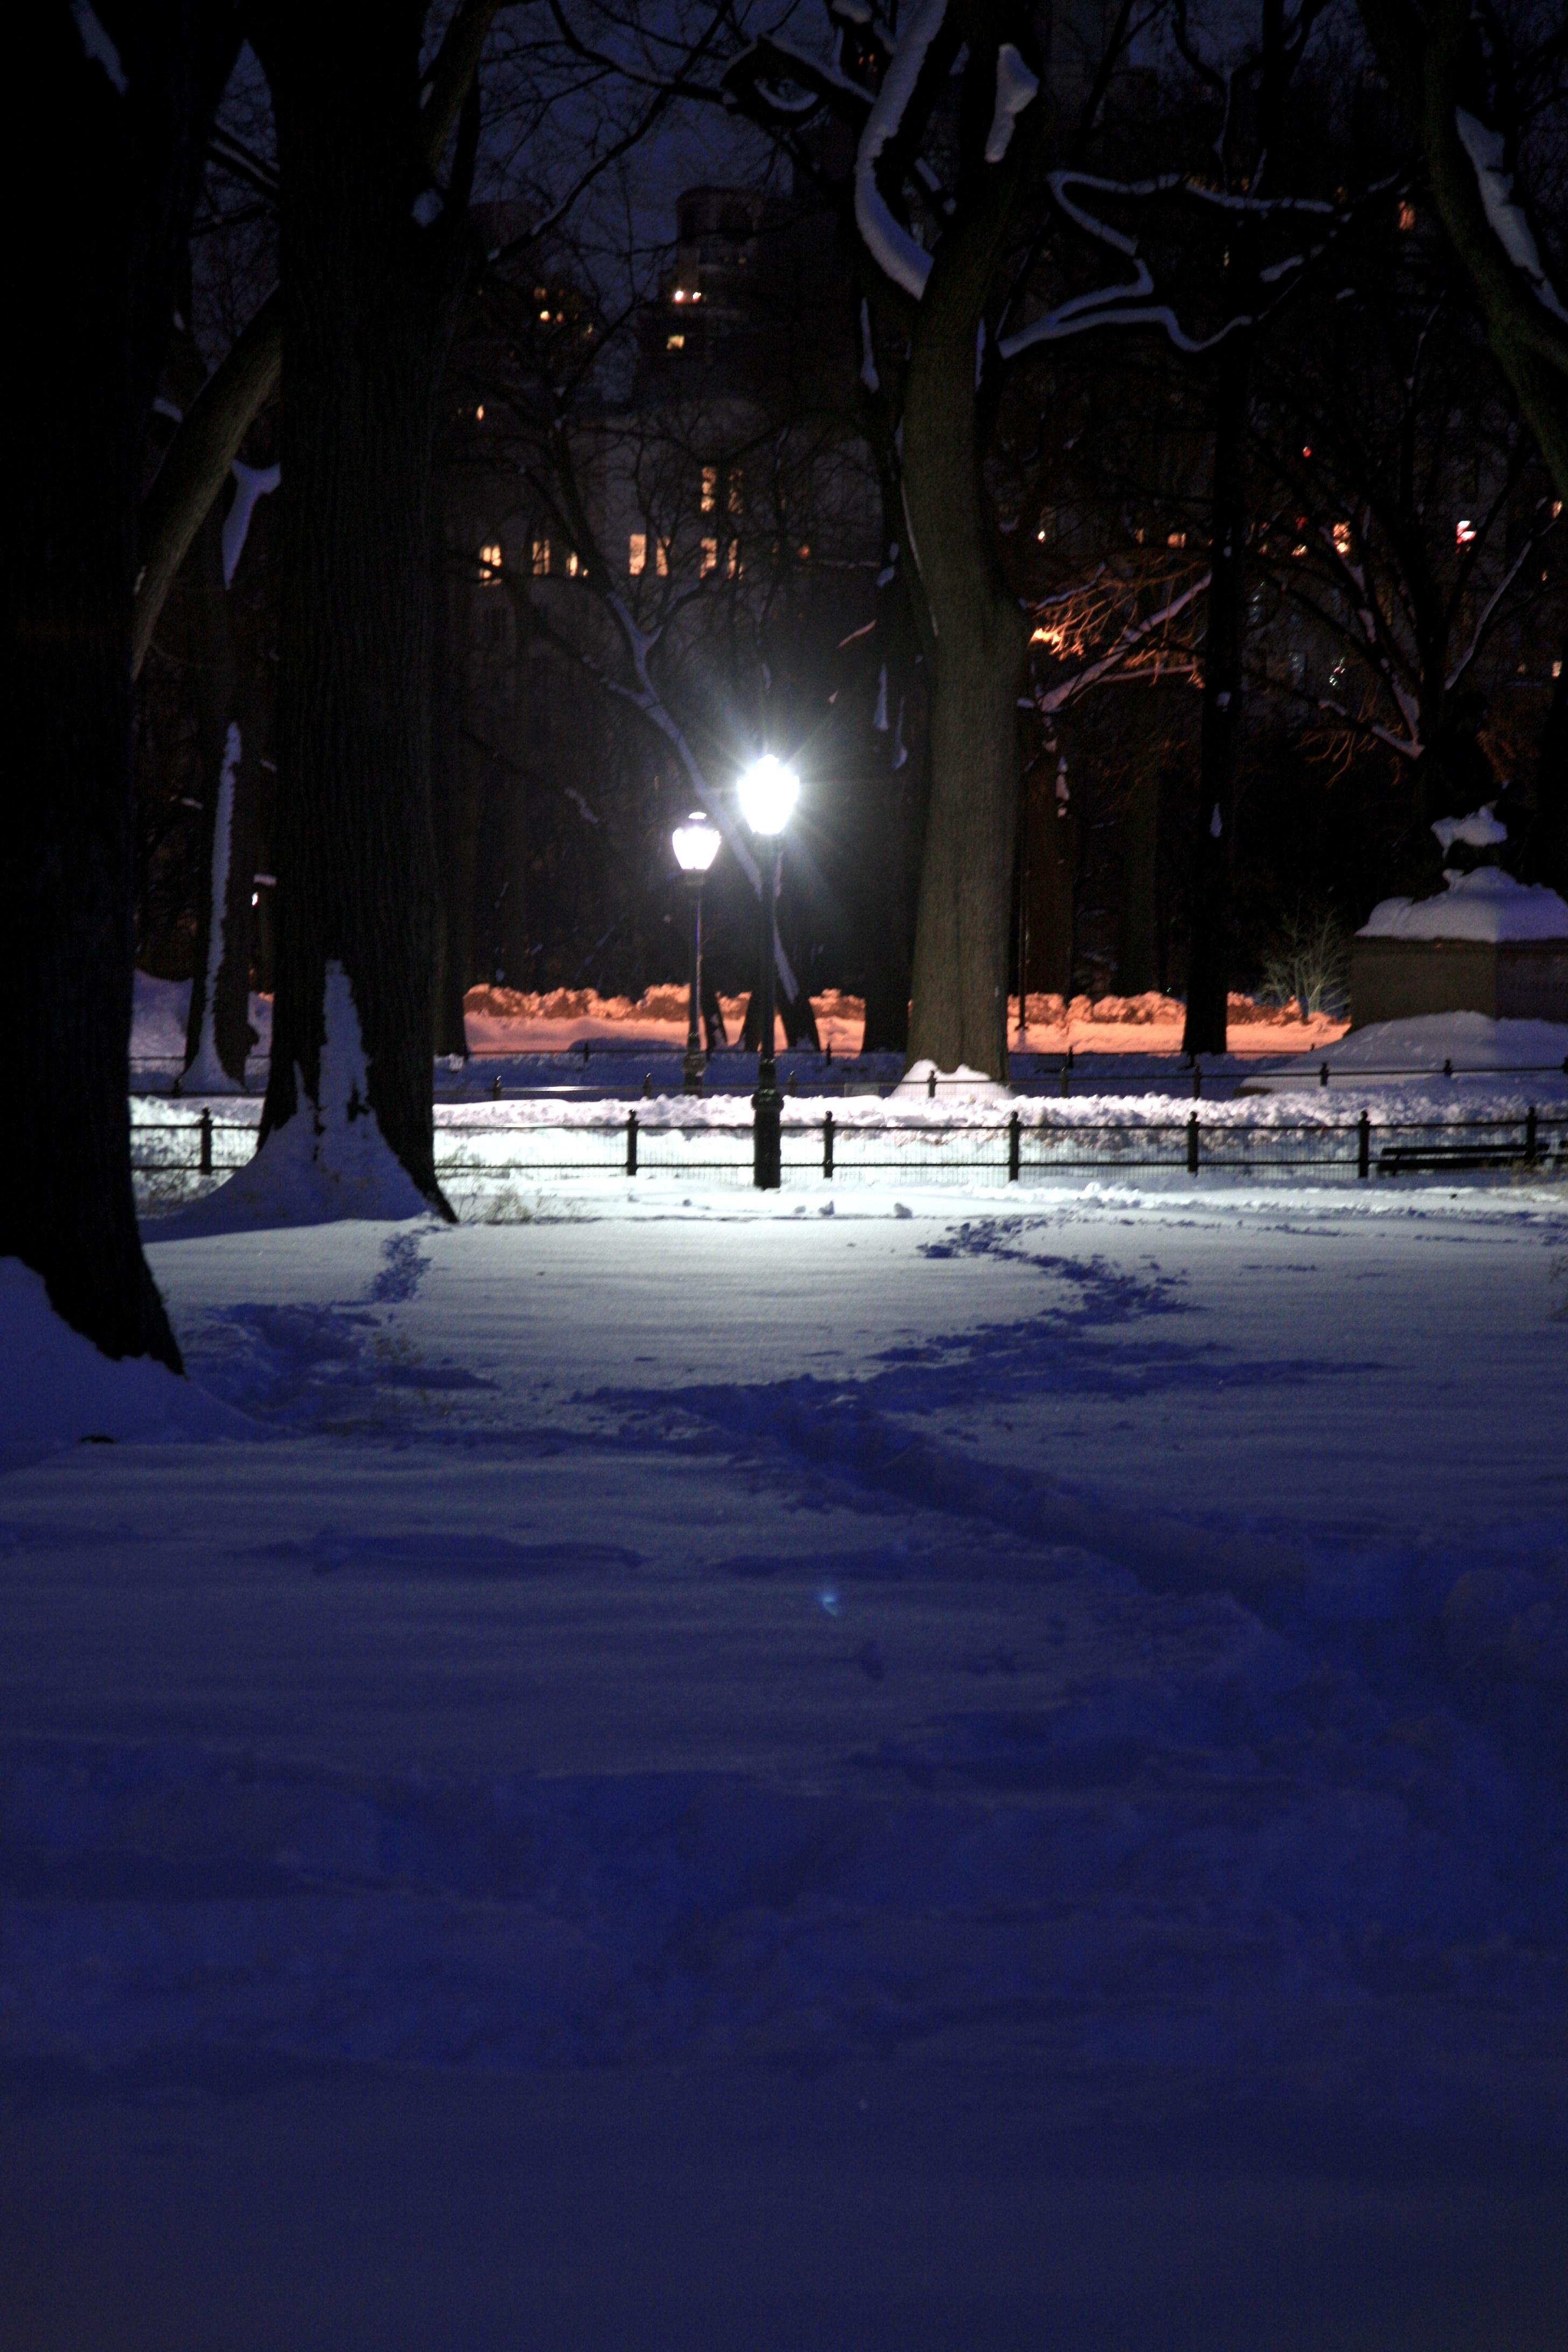 картинки : снег, зима, легкий, ночь, Лед, вечер, Nyc, Погода, Темнота,  время года, Нью-Йорк, Ny, Центральный парк, Замораживание, каток 2912x4368  - - 534502 - красивые картинки - PxHere